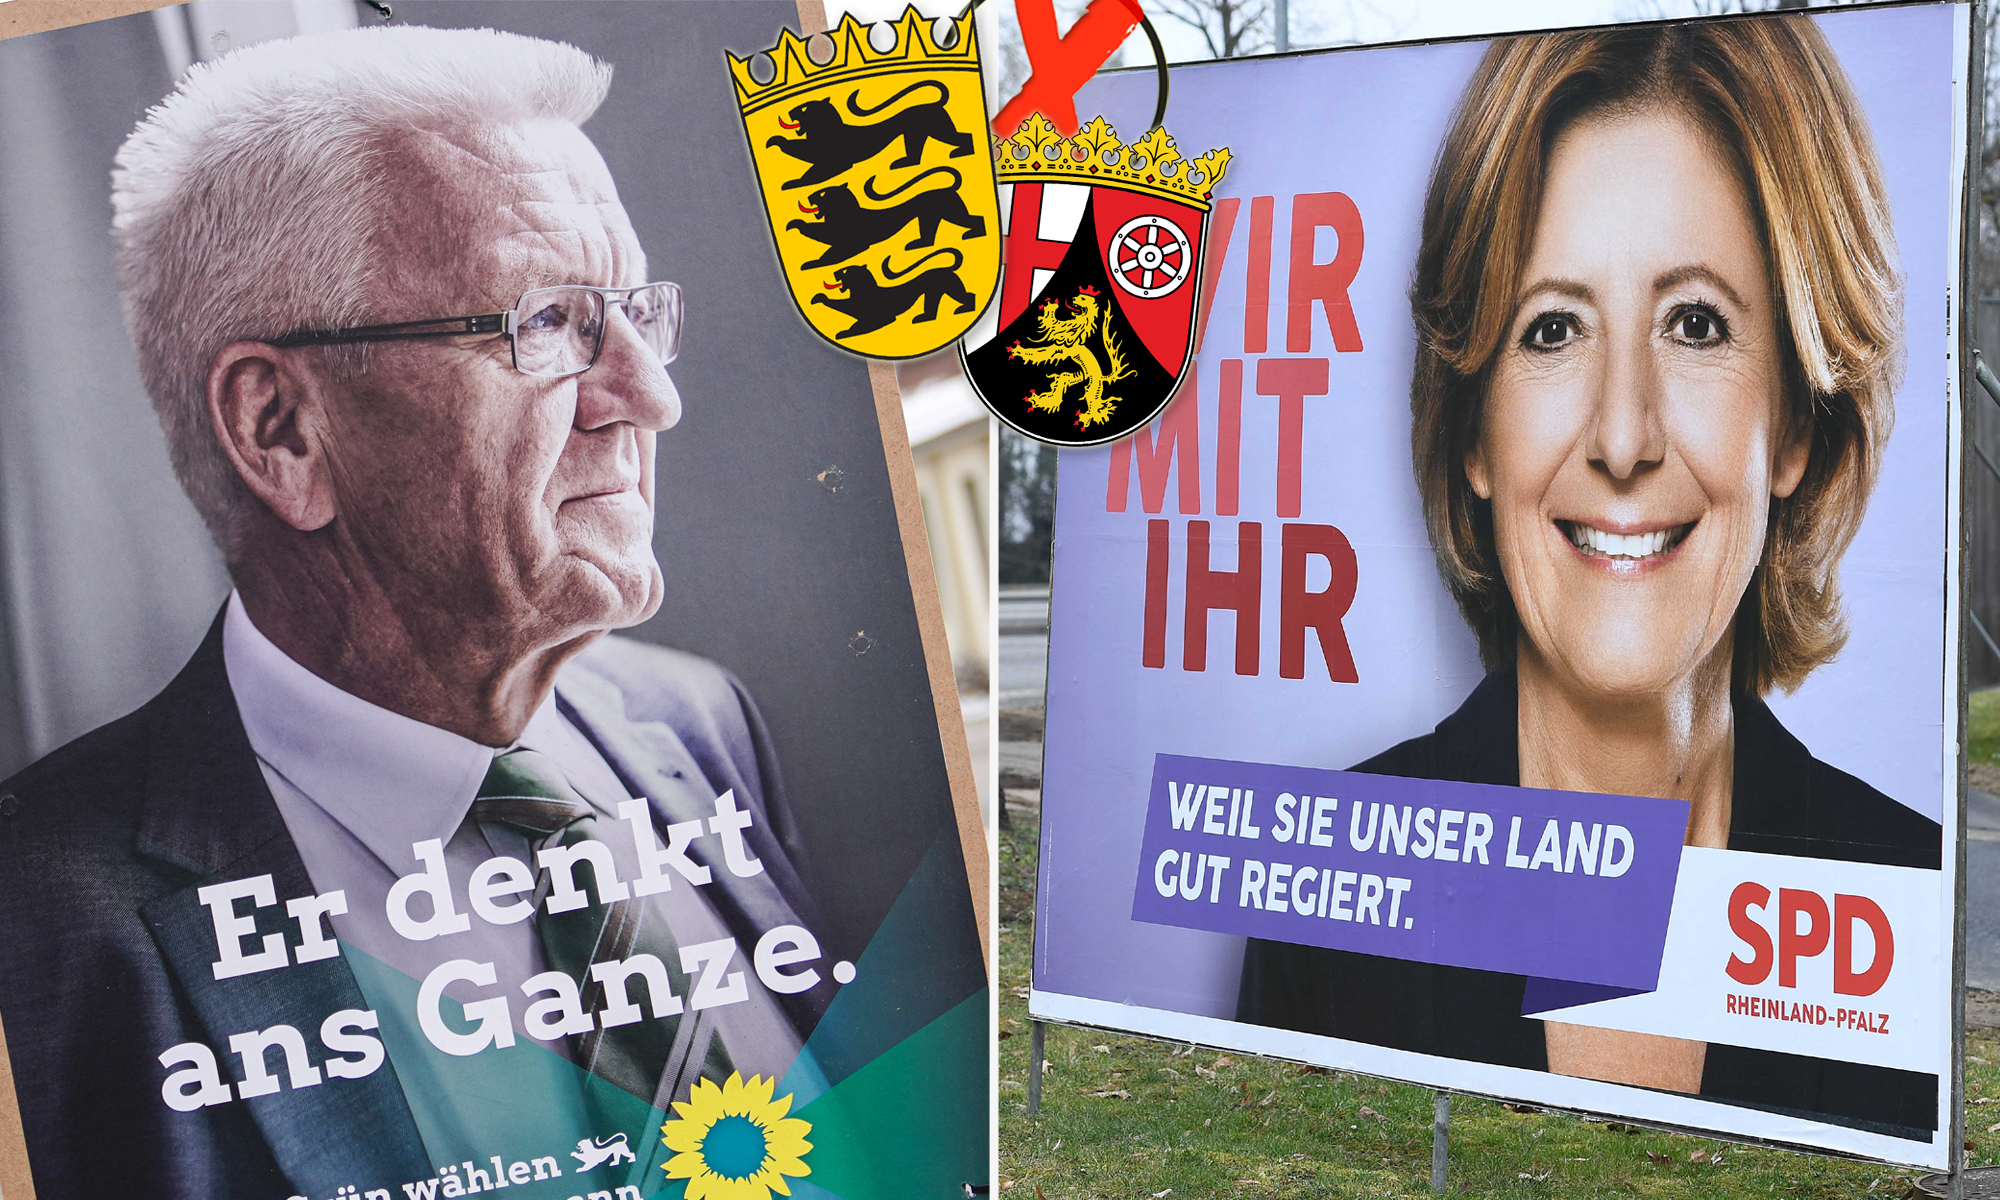 Baden-Württembergs Ministerpräsident Winfried Kretschmann (Grüne) und seine Amtskollegin in Rheinland-Pfalz, Malu Dreyer (SPD), waren Spitzenkandidaten ihrer Parteien bei der Landtagswahl